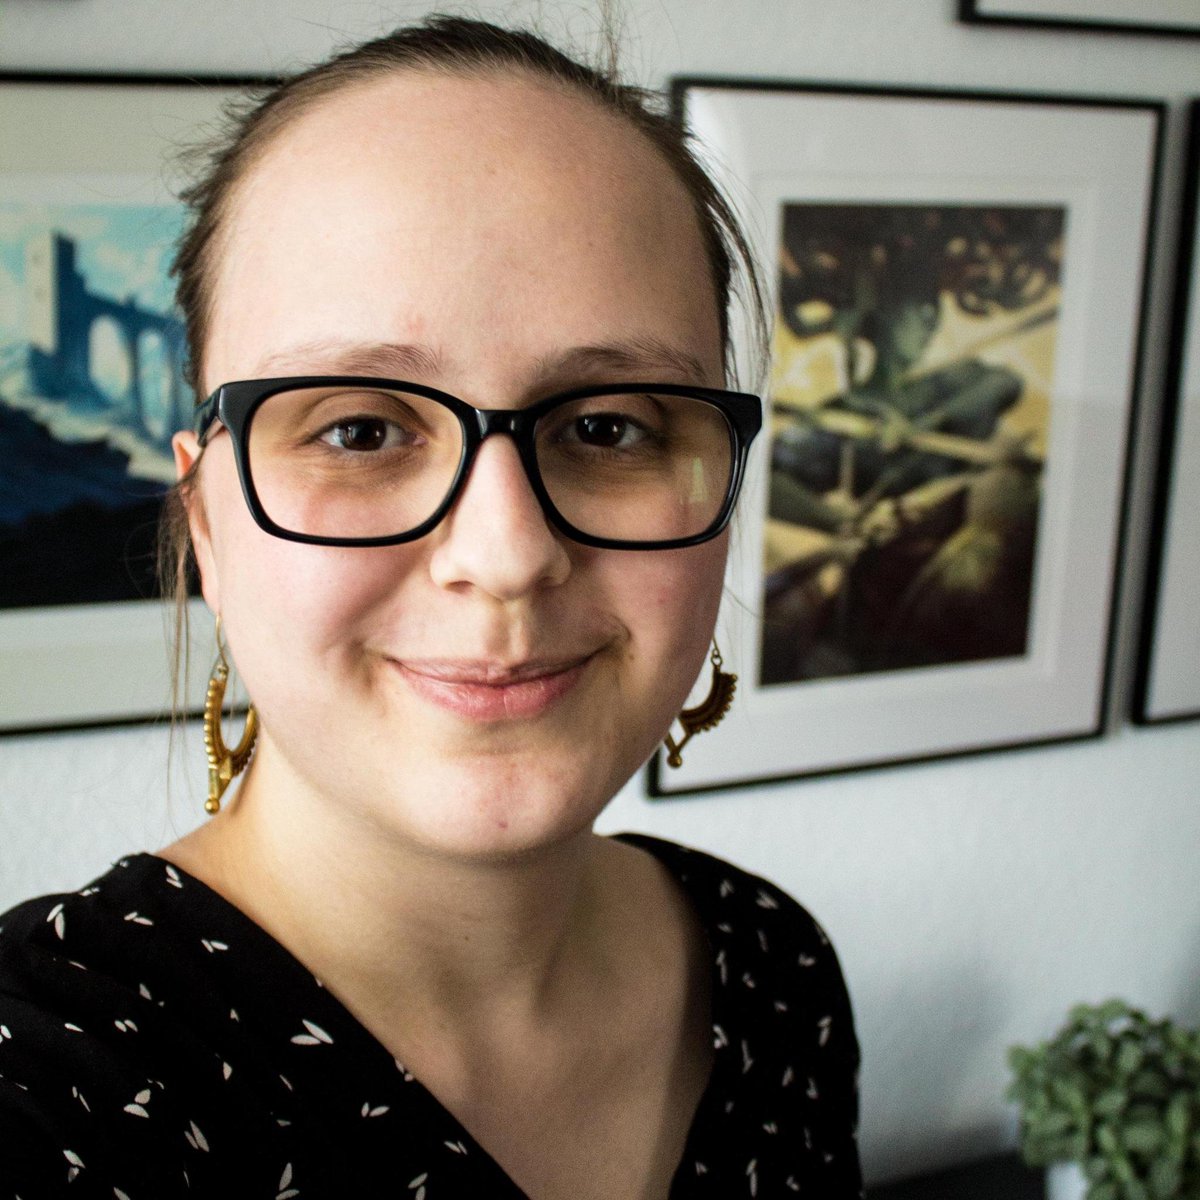 Auch Aurelia (@hekabeohnename) ist in der Bande sehr aktiv. Sie hat Geschichte und Digital Humanities studiert und forscht u.a. als Doktorandin bei @chludens vor allem zu Gender und (Geschlechter-)Geschichte von/in/mit Digitalen Spielen.